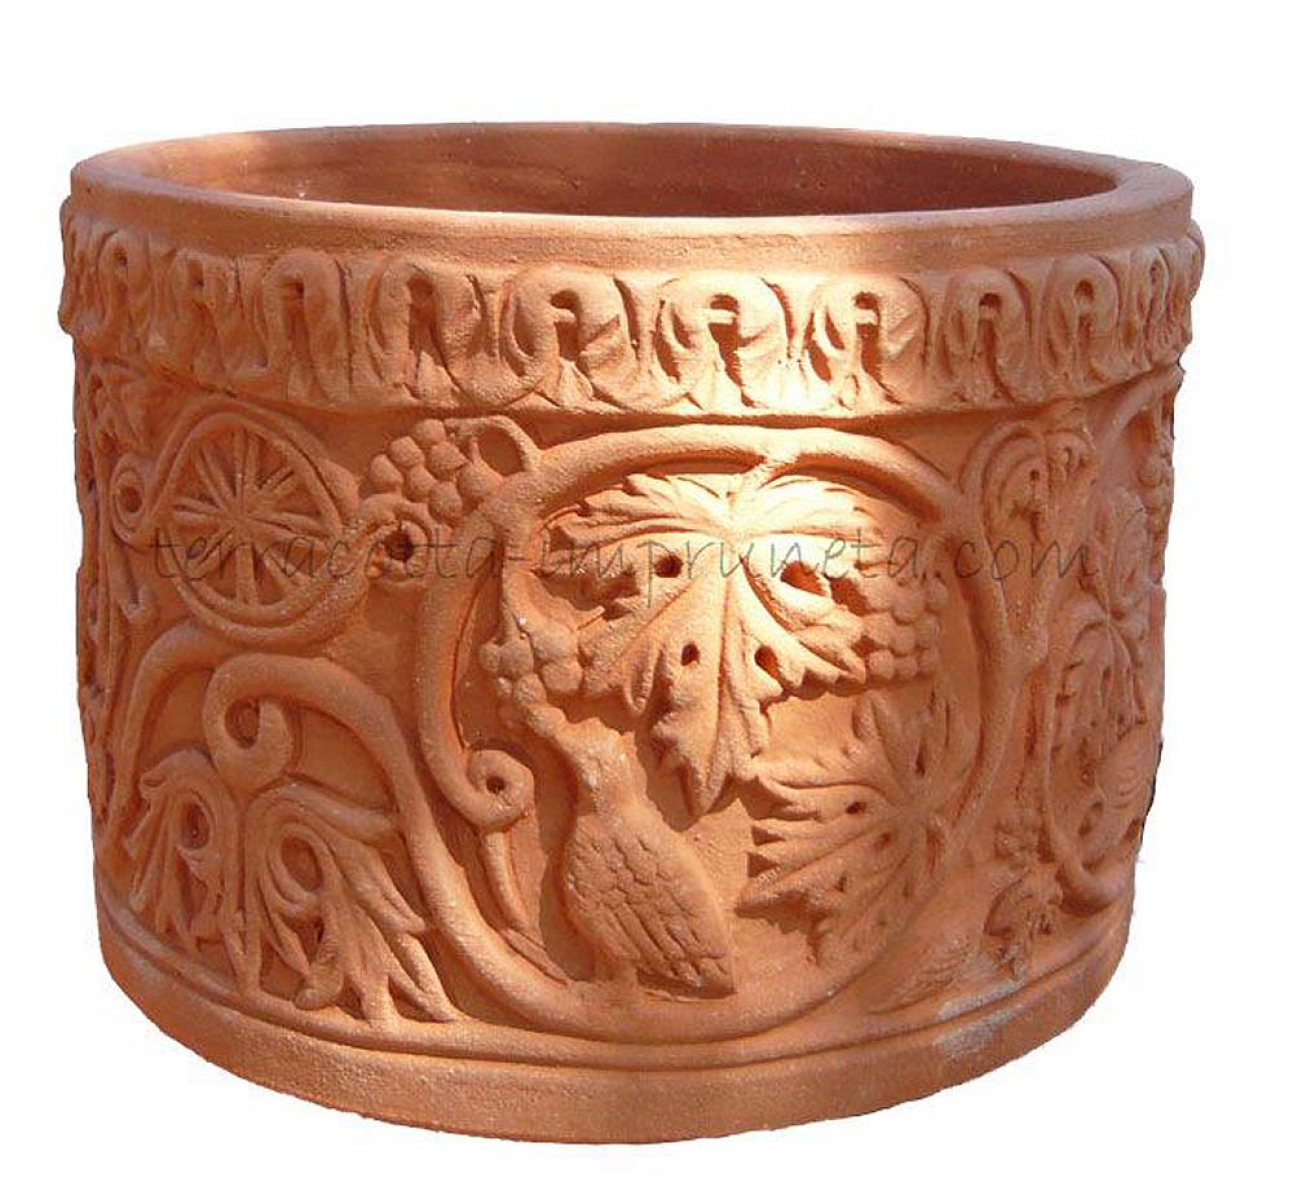 zylindrischer Terracotta-Topf mit feiner Ornamentik